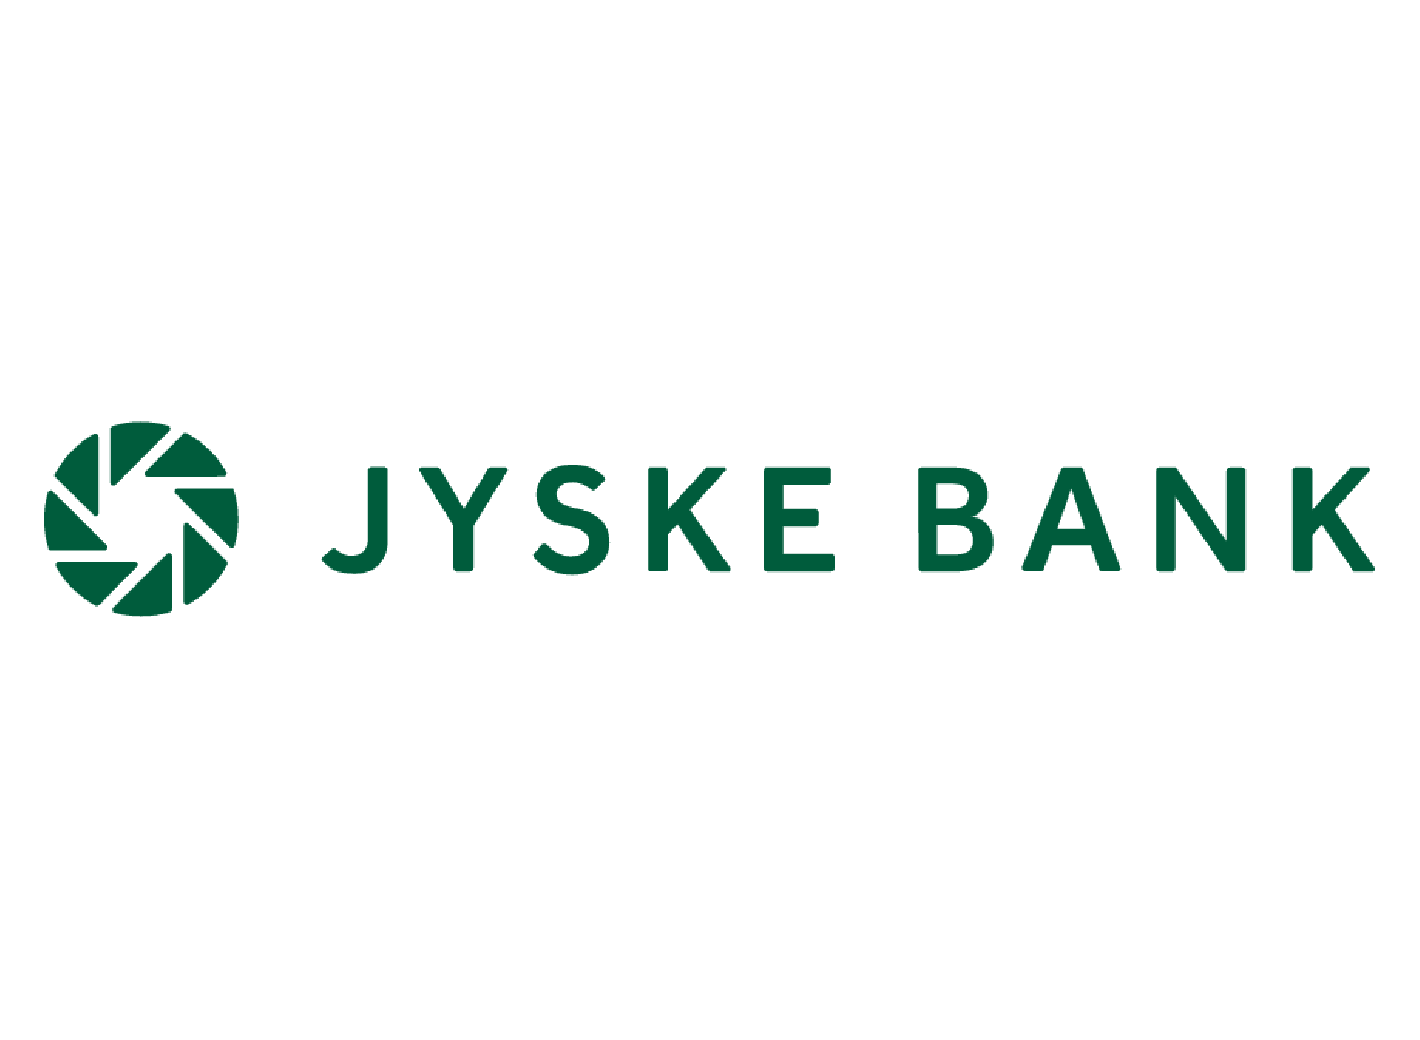 Jyske-bank-final.png